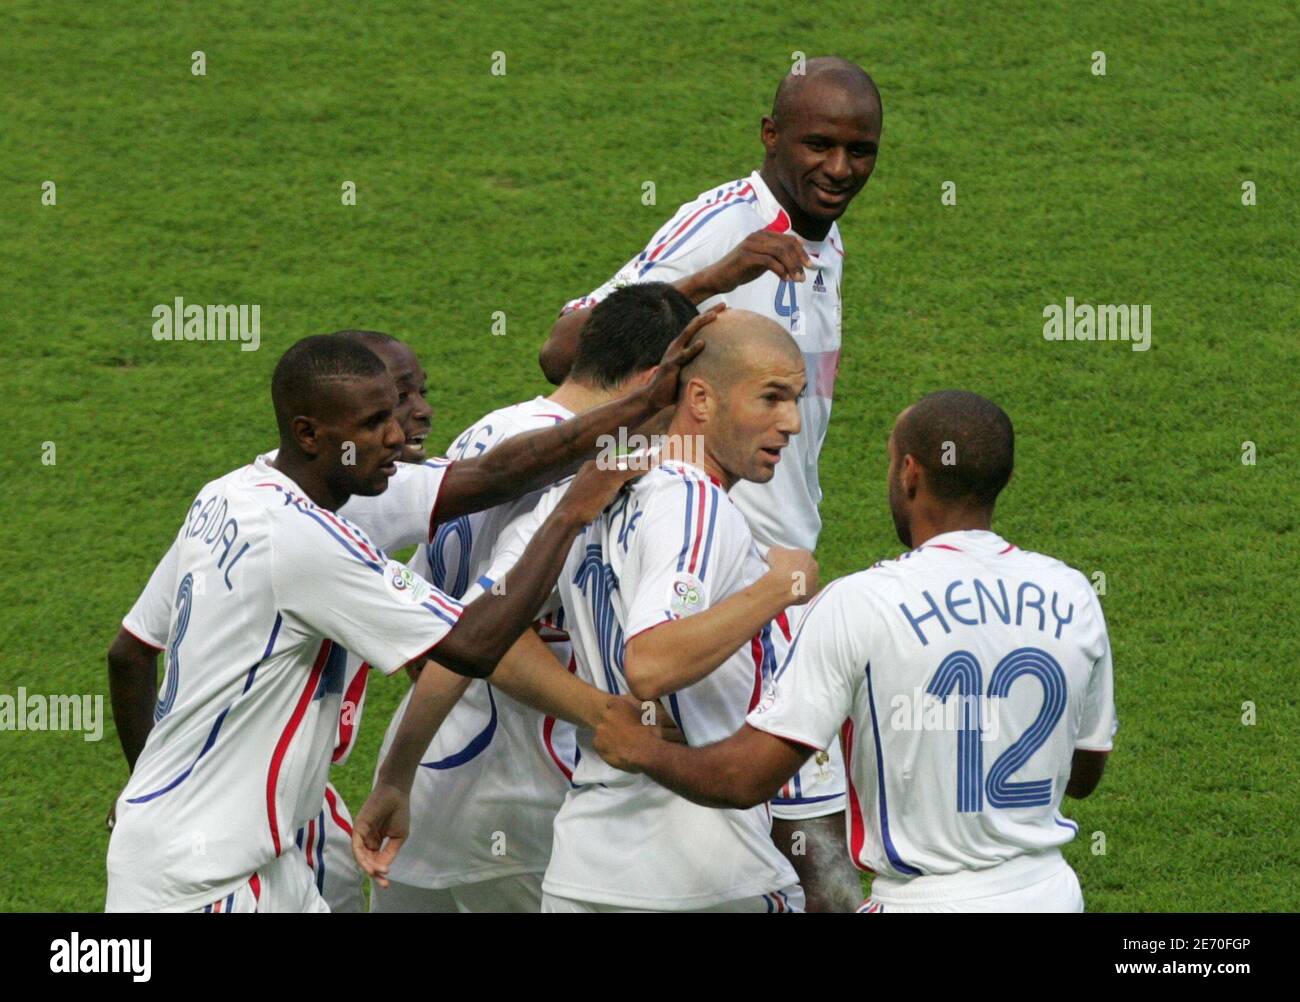 La francese Zinedine Zidane (fronte, 2° R) celebra il suo obiettivo contro l'Italia con i compagni di squadra durante la loro partita di calcio finale della Coppa del mondo 2006 a Berlino il 9 luglio 2006. RESTRIZIONE FIFA - NESSUN UTILIZZO MOBILE REUTERS/ALESSANDRO BIANCHI (GERMANIA) Foto Stock